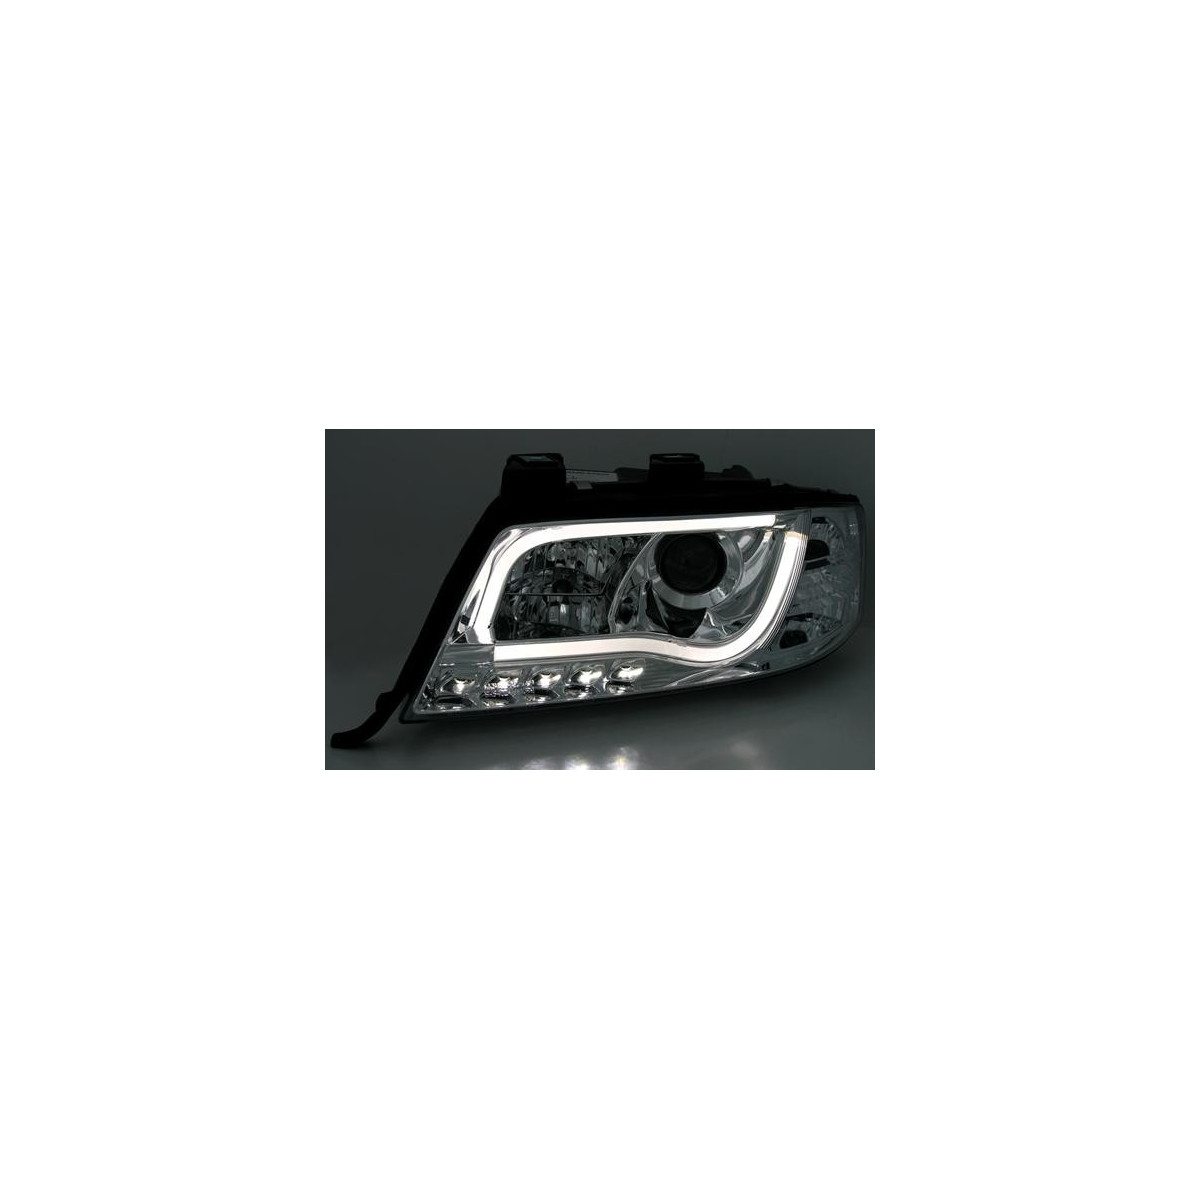 LAMPY PRZEDNIE AUDI A6 97-01 CHROM TFL LIGHT BAR